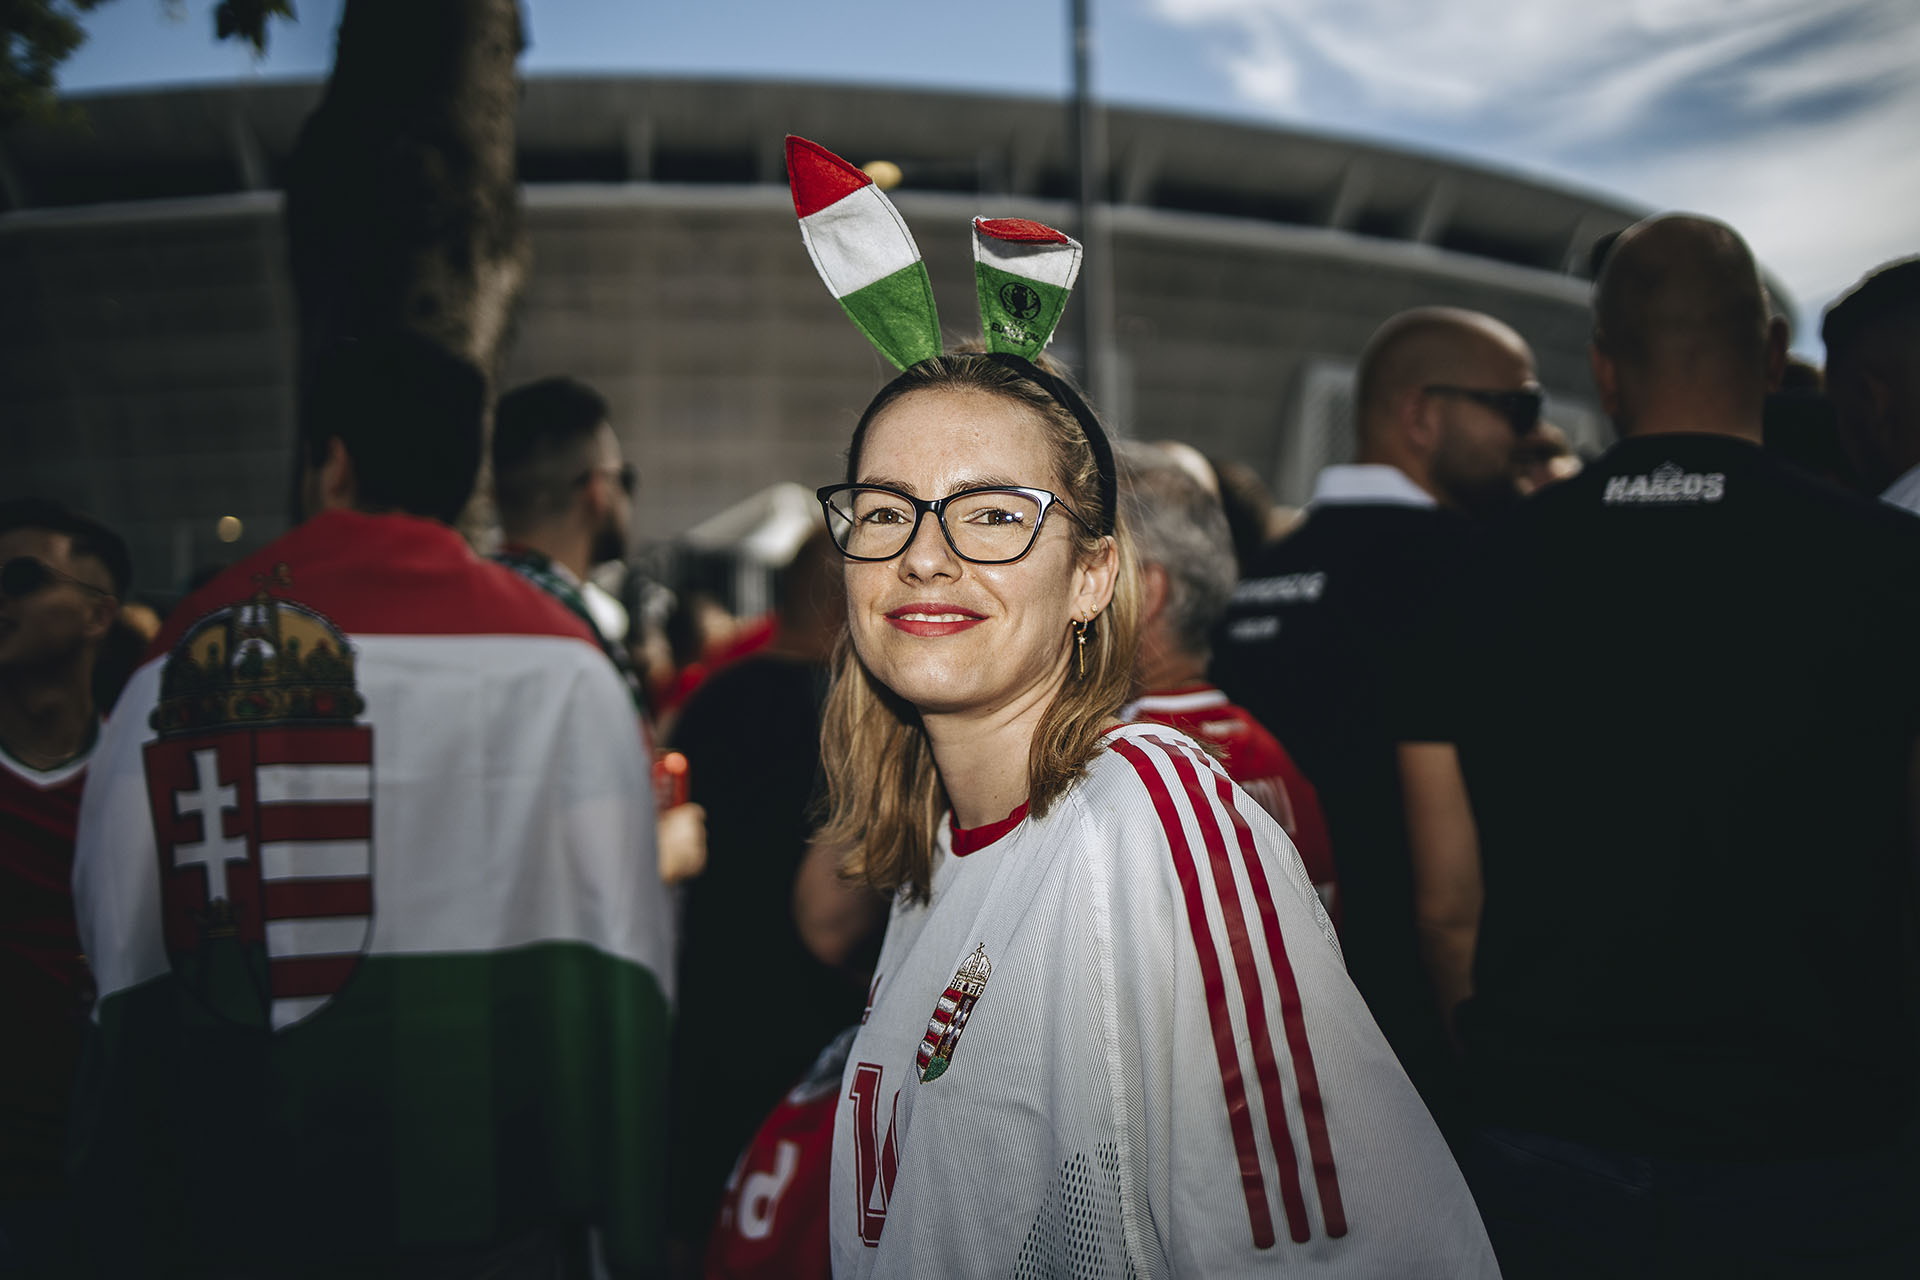 Galéria: ilyen volt a Magyarország-Portugália meccs